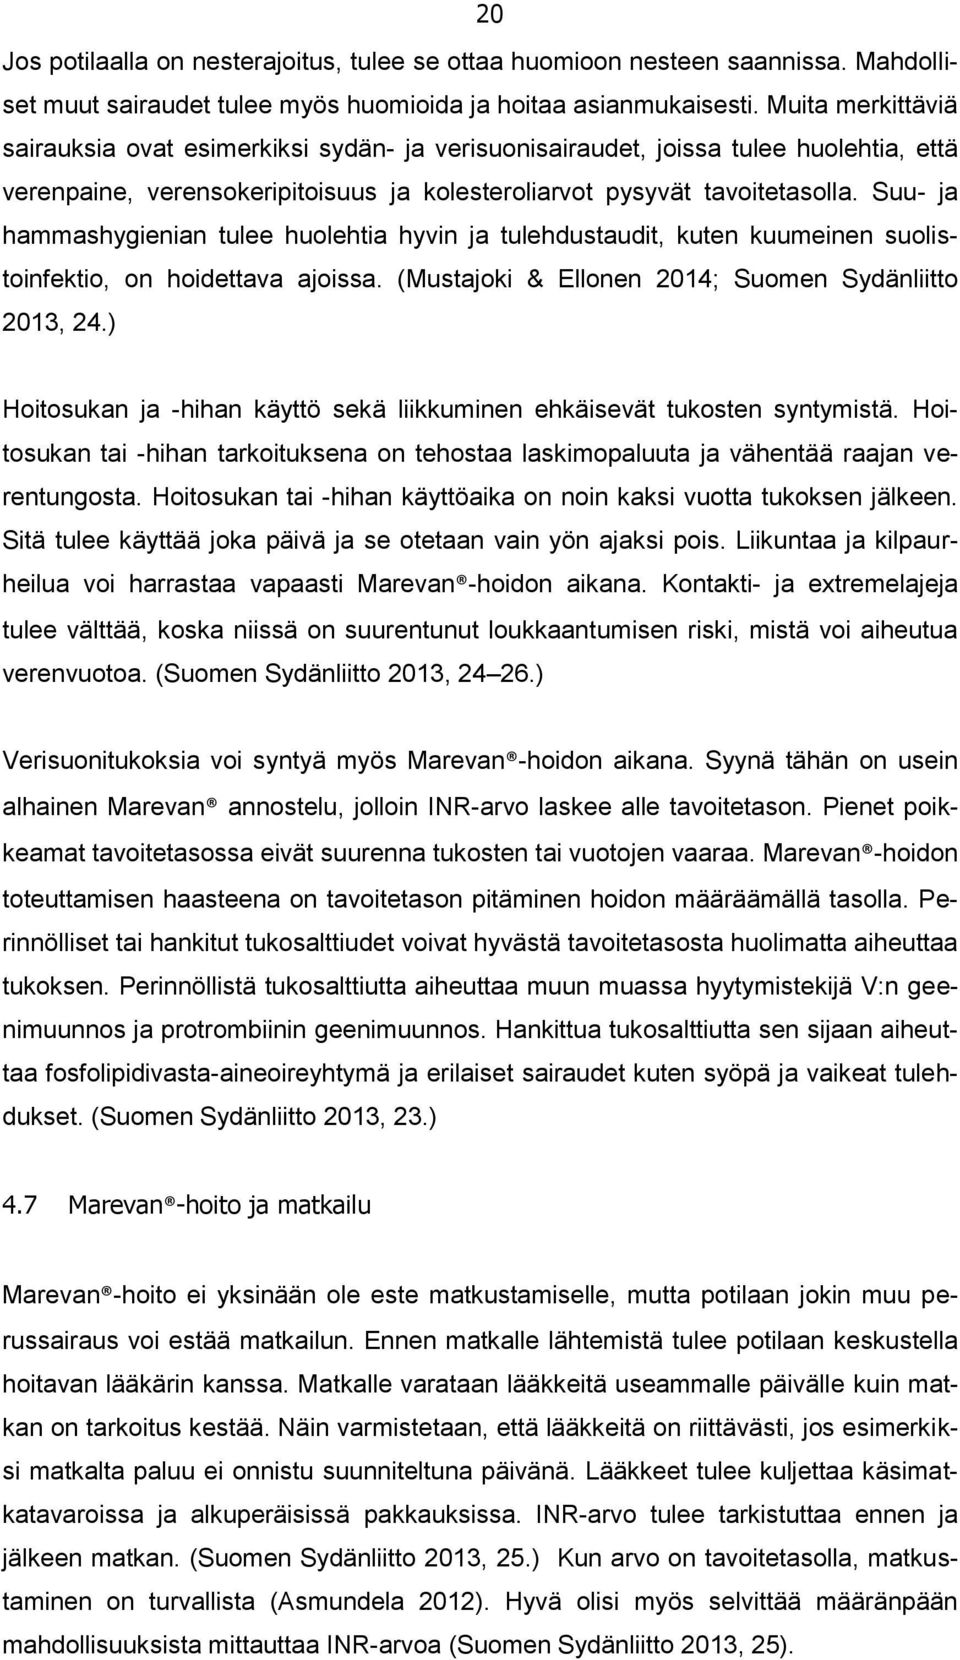 Suu- ja hammashygienian tulee huolehtia hyvin ja tulehdustaudit, kuten kuumeinen suolistoinfektio, on hoidettava ajoissa. (Mustajoki & Ellonen 2014; Suomen Sydänliitto 2013, 24.